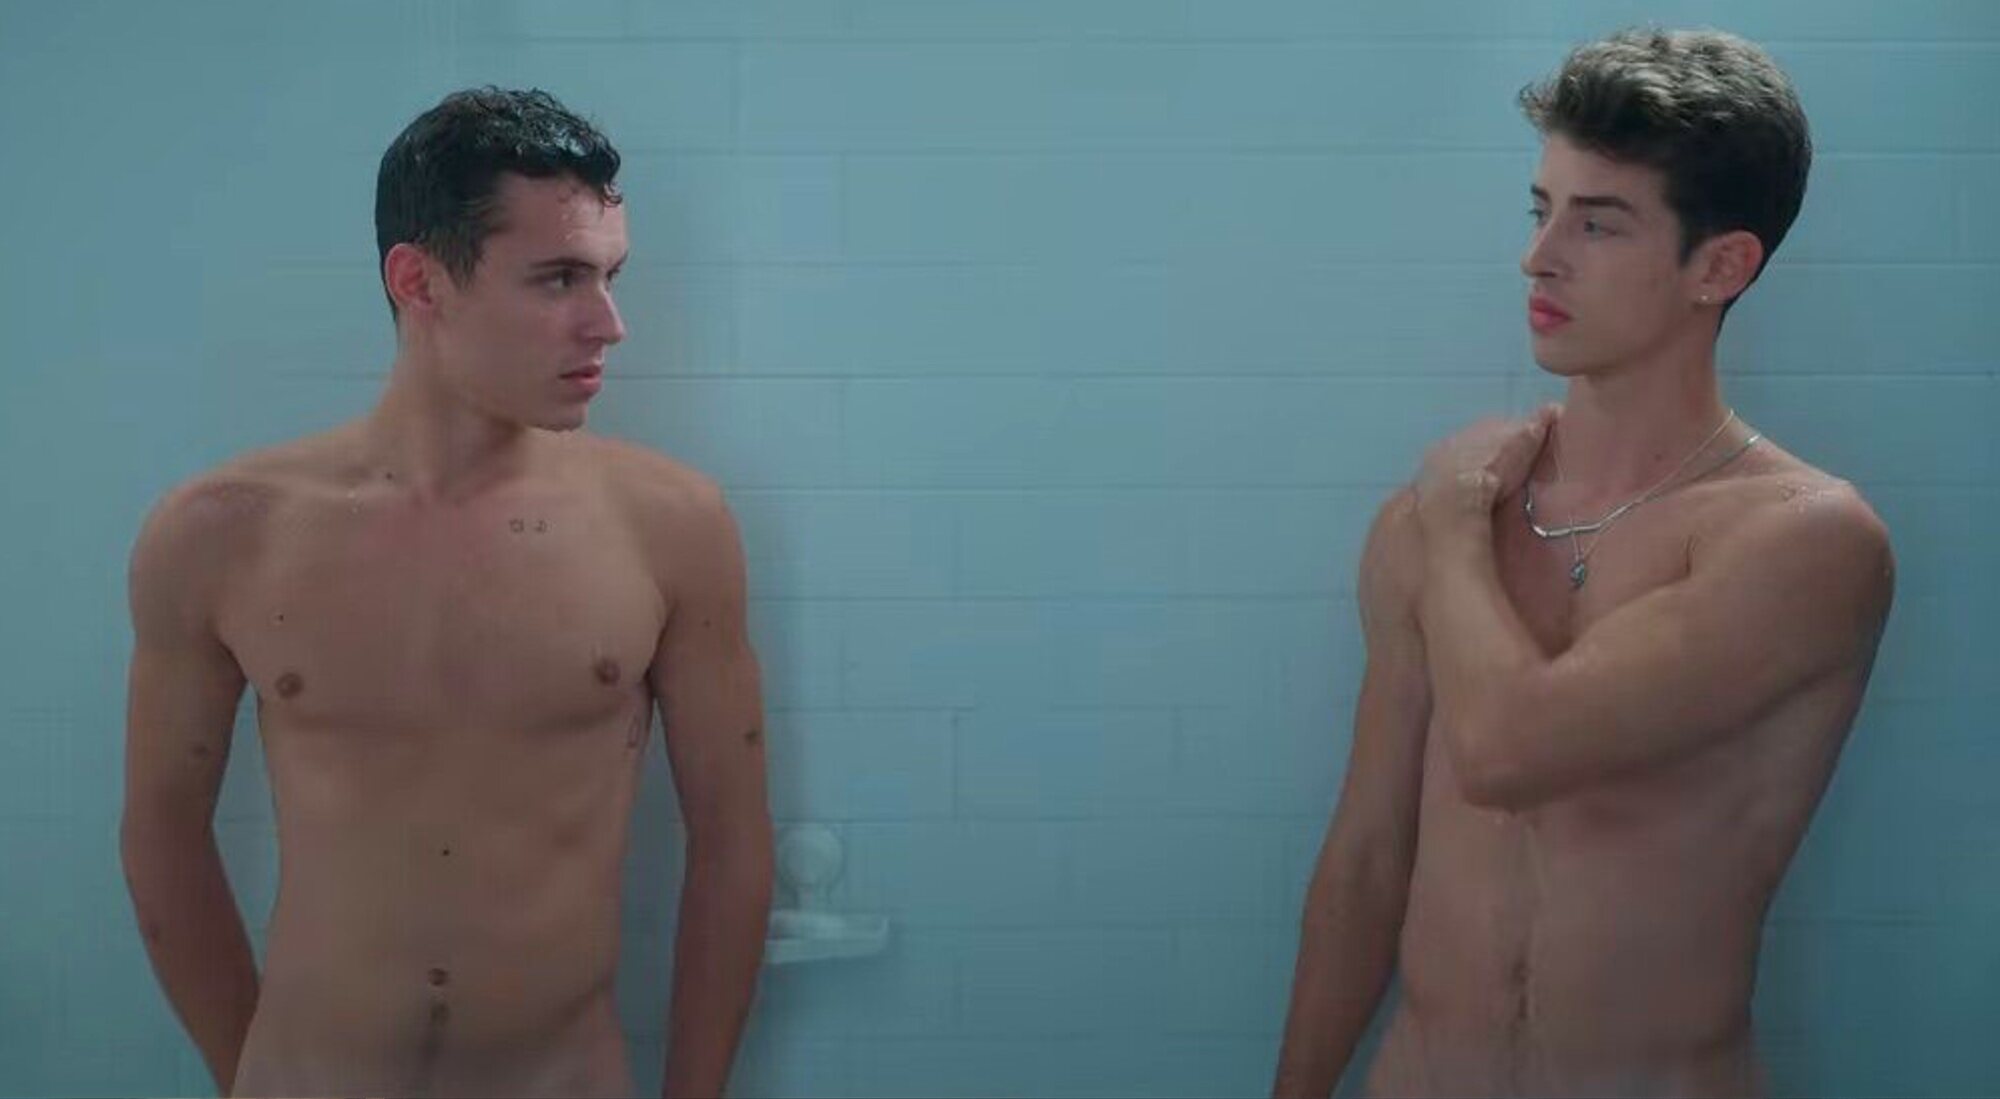 Arón Piper y Manu Ríos se miran desnudos en la ducha en 'Élite 4'